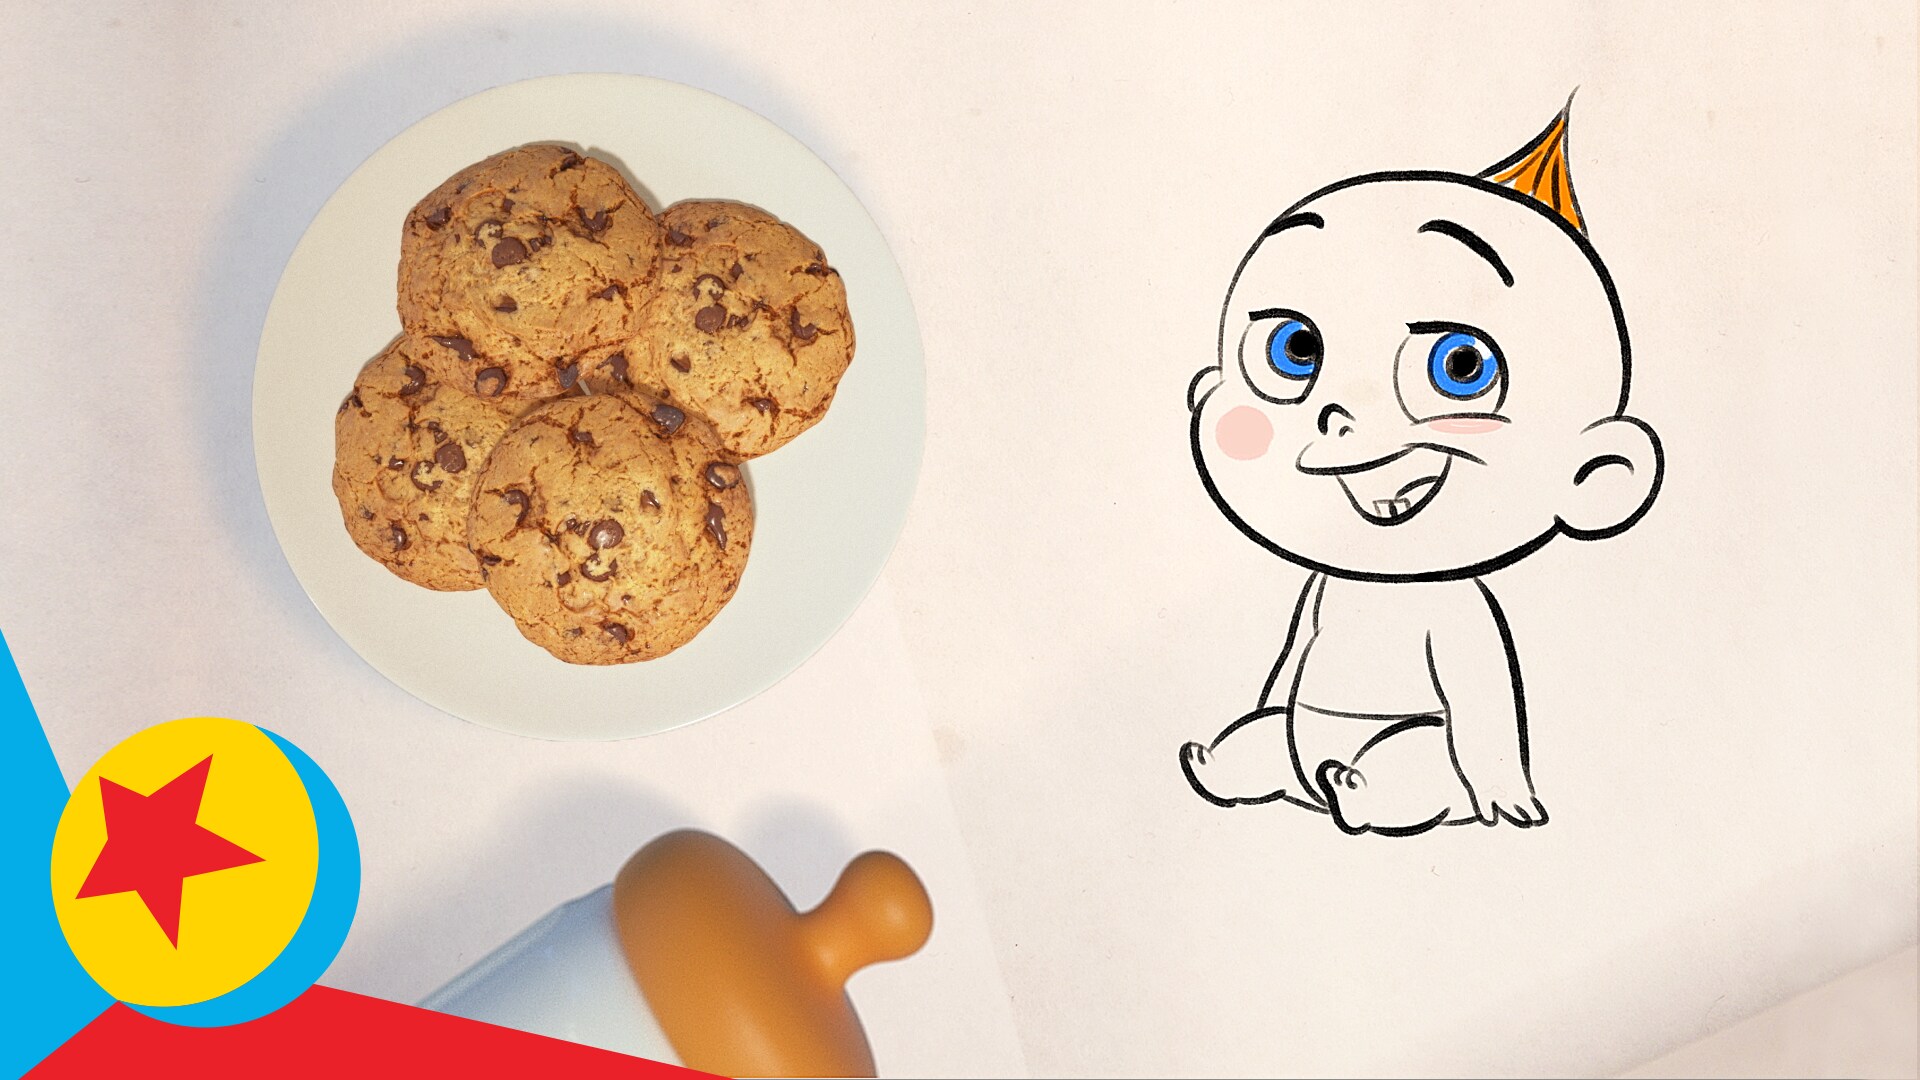 Jack-Jack Makes Cookie Num-Nums! | Incredibles 2 | Cooking With Pixar